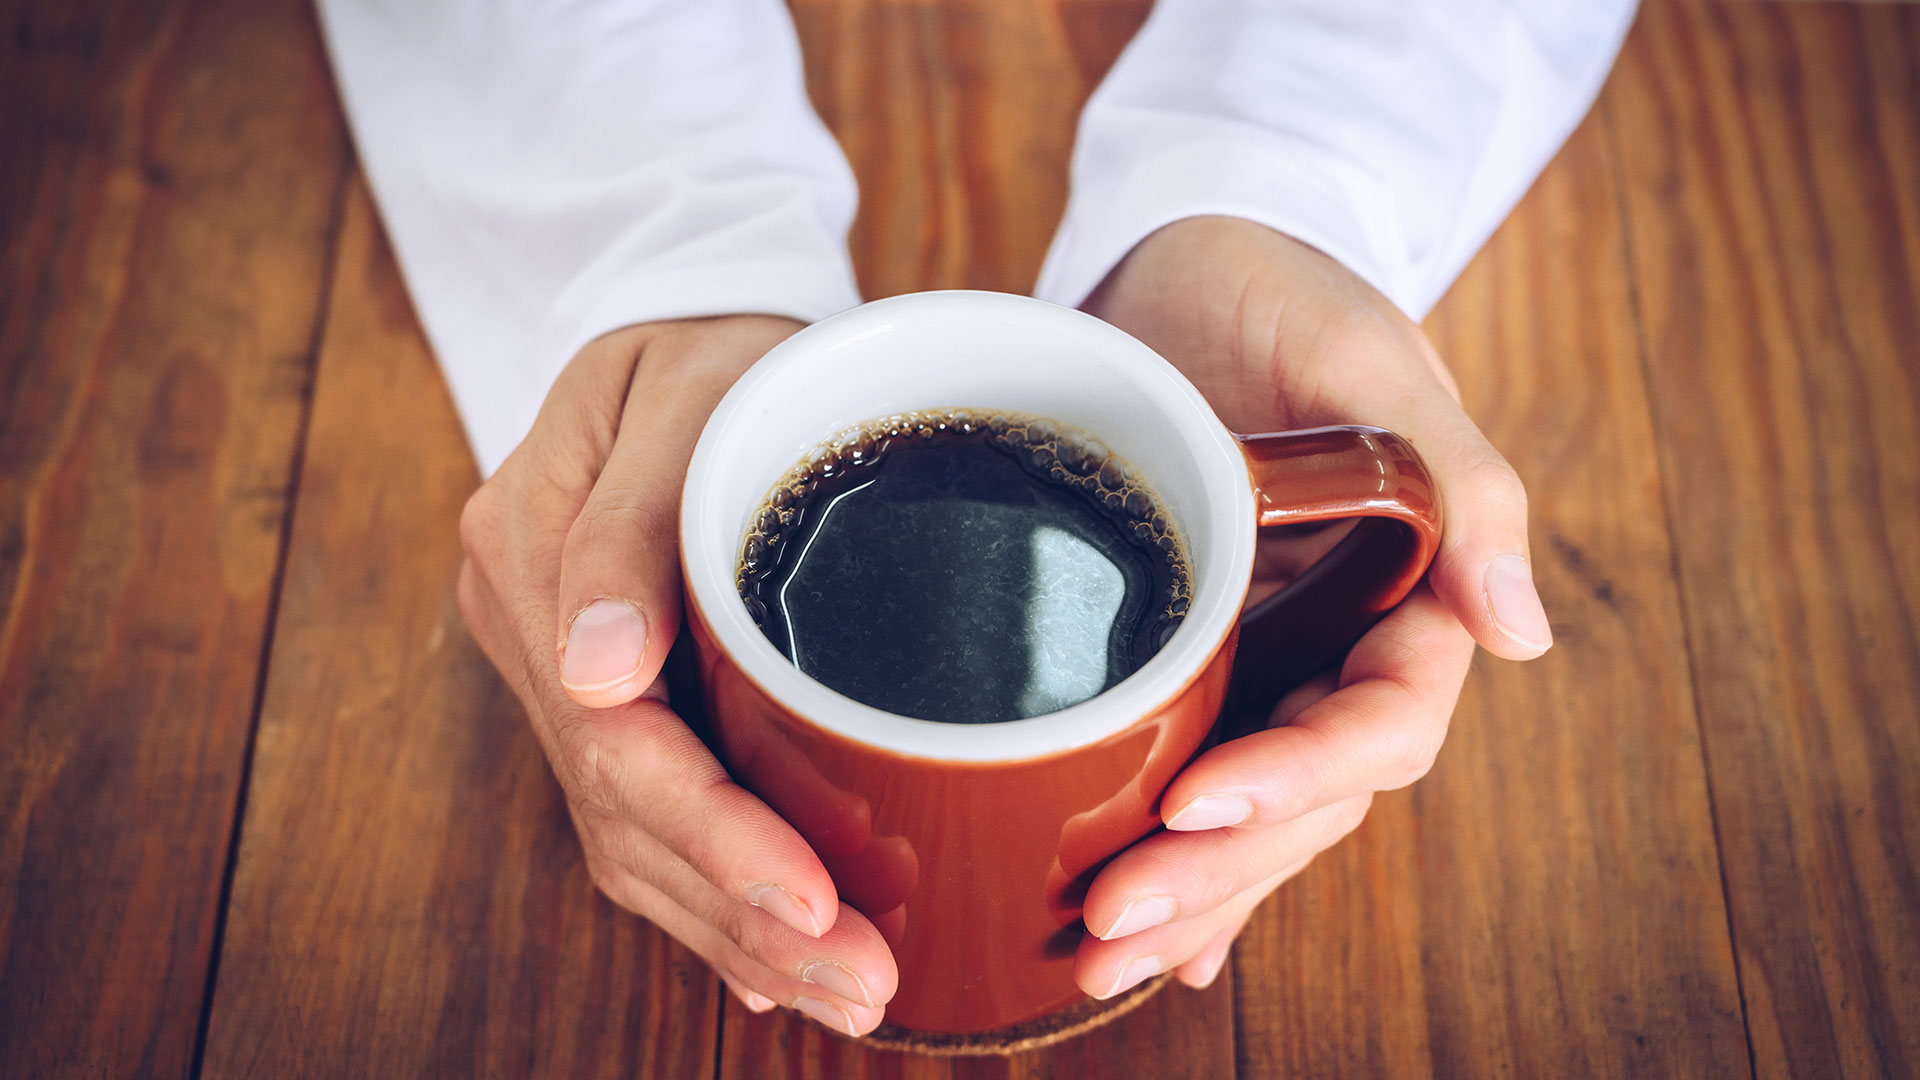 La cafeína aumenta las posibilidades de realizar compras impulsivas, advirtió un estudio